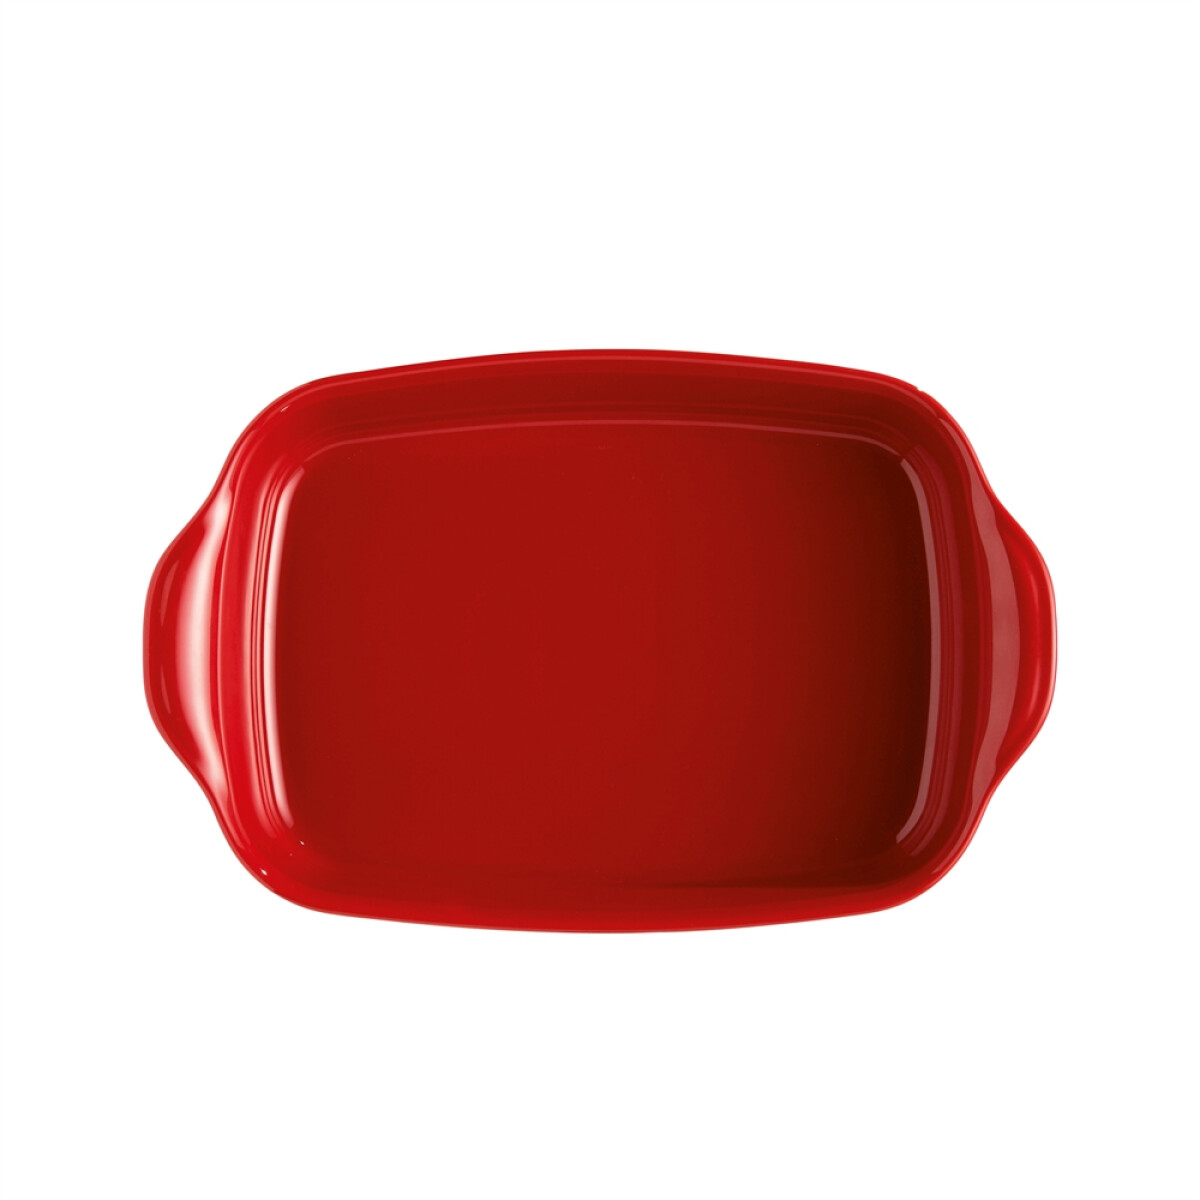 Керамична тава EMILE HENRY RECTANGULAR OVEN DISH - 36,5 х 23,5 см, цвят червен